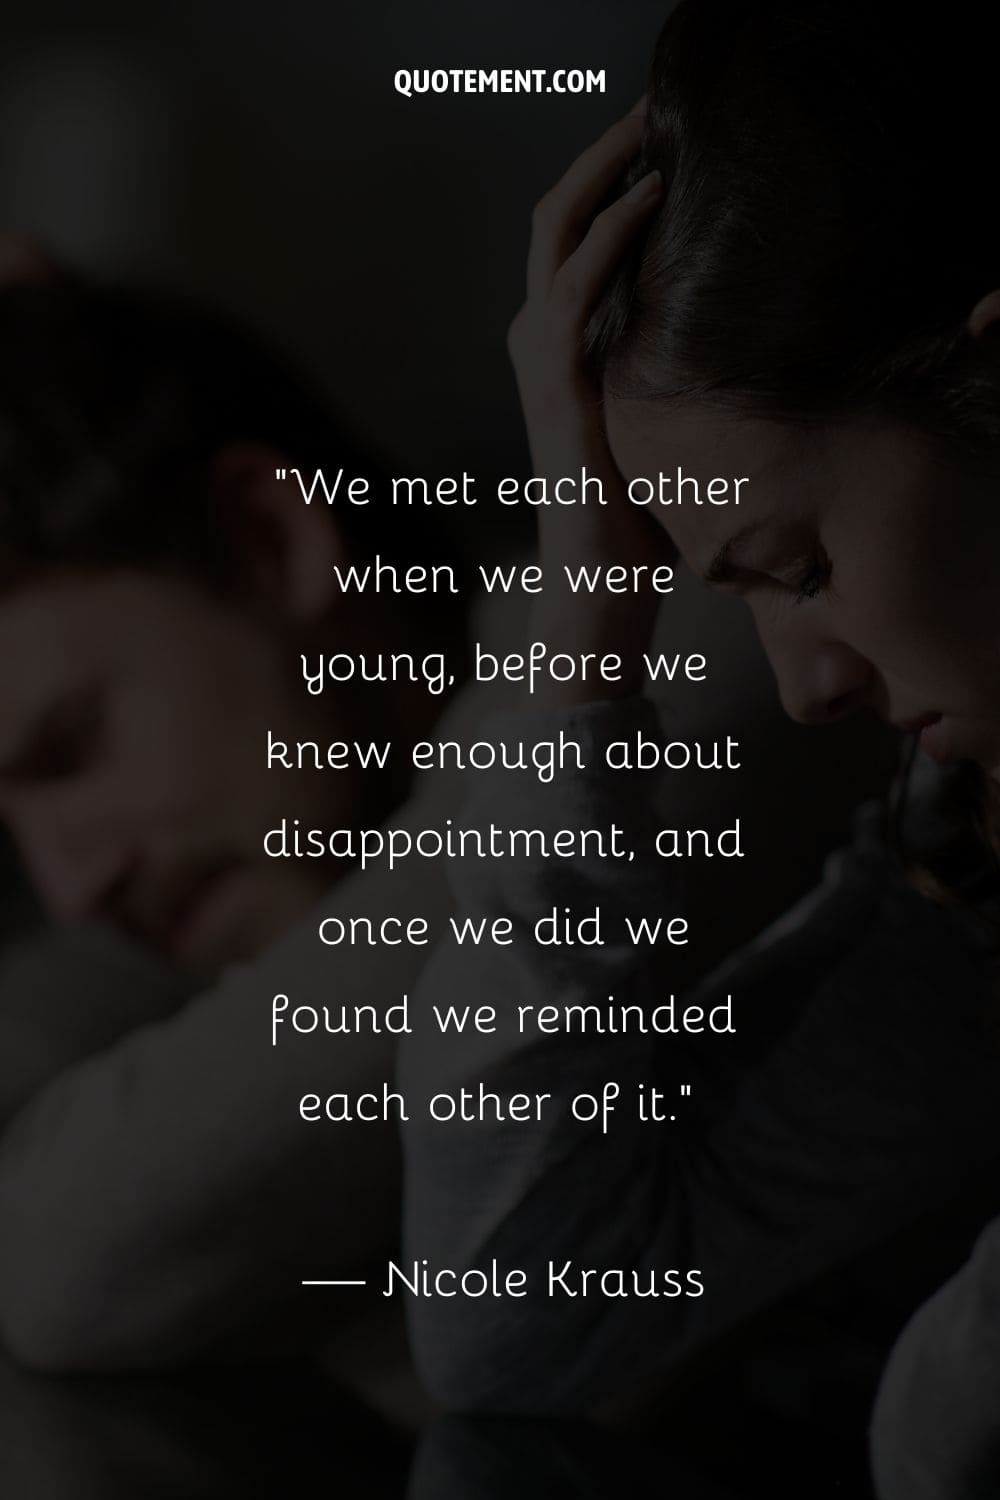 Nos conocimos cuando éramos jóvenes, antes de saber lo suficiente sobre la decepción, y una vez que lo hicimos descubrimos que nos la recordábamos mutuamente